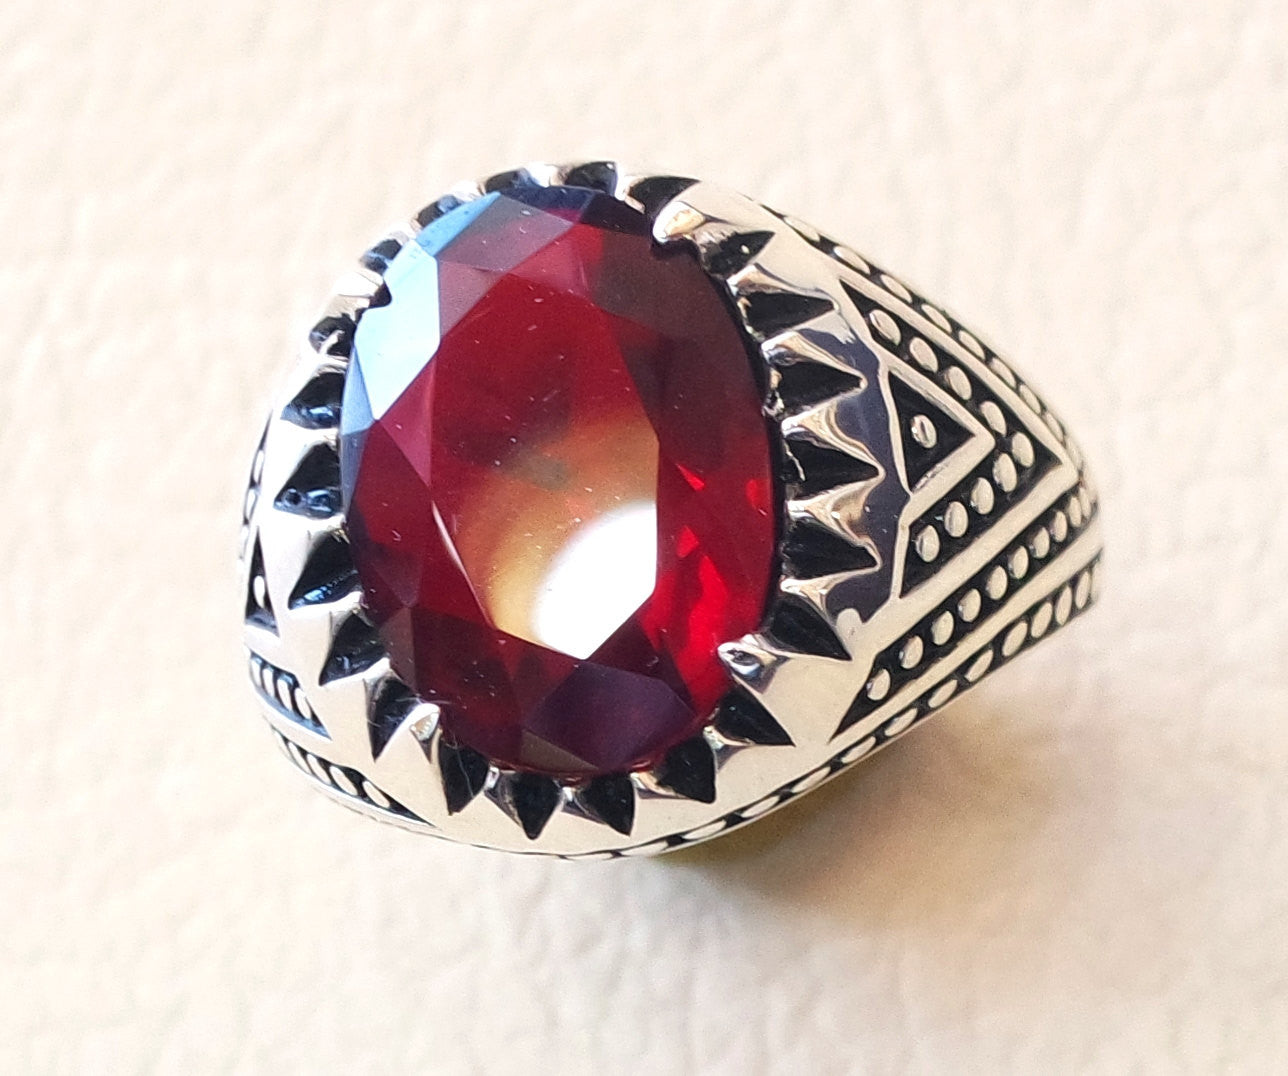 rubis identique pierre synthétique imitation de haute qualité corundie rouge couleur hommes anneau Sterling argent 925 toute taille ottomane bijoux du Moyen-Orient